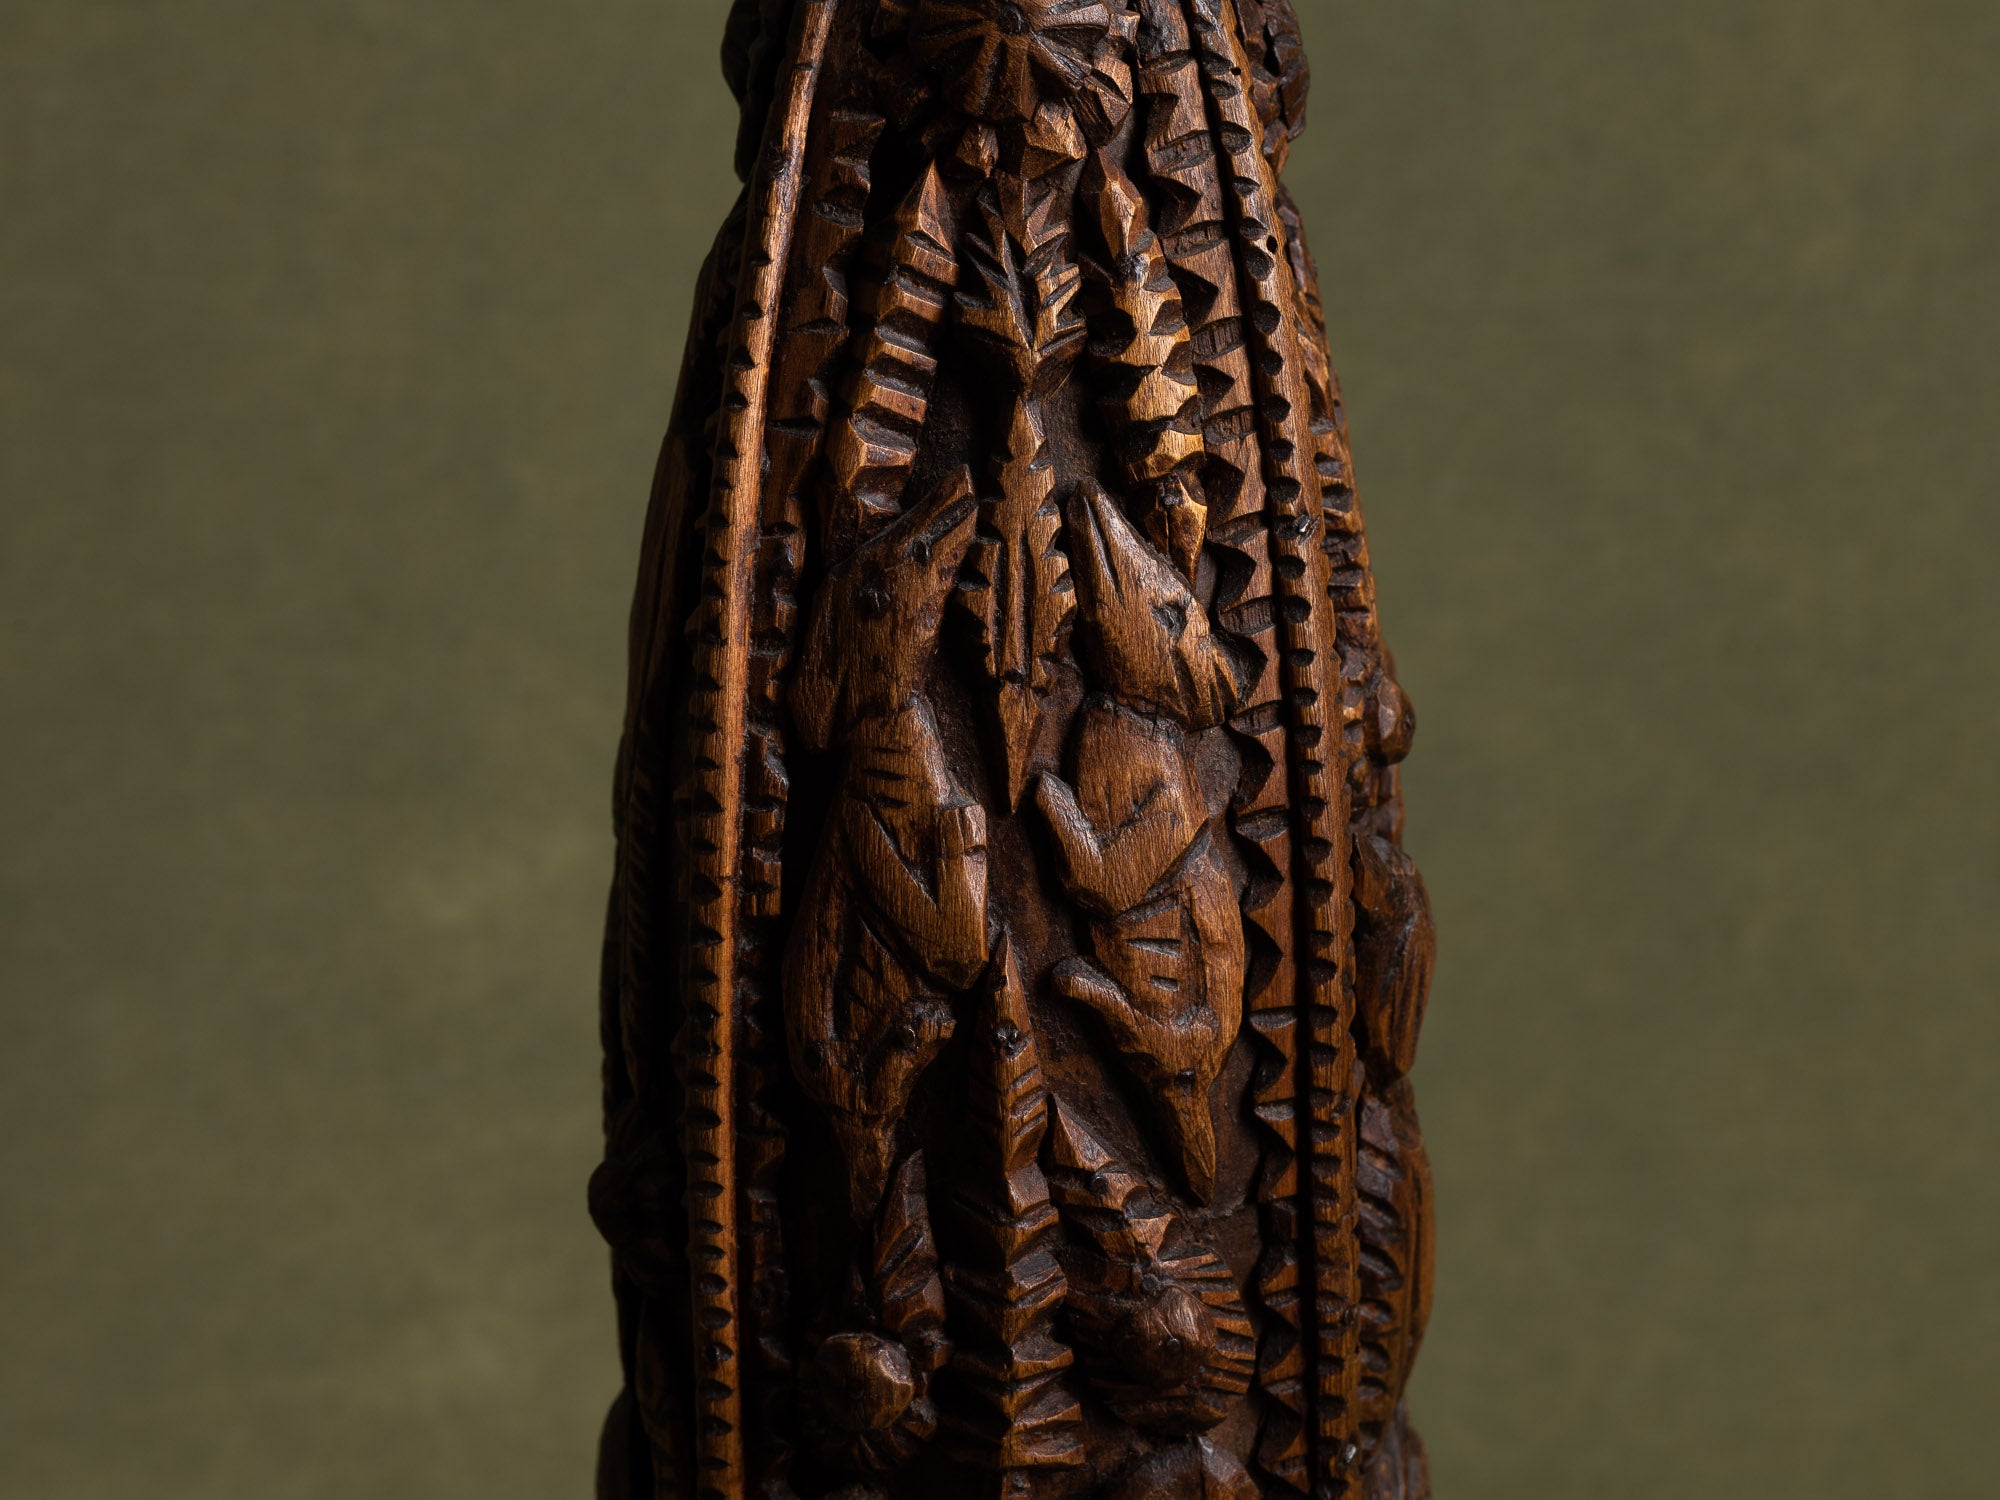 Bouteille de mariage en bois sculpté, art paysan, France (Fin du XIXe / début du XX siècle)..Unique Old wooden carved wedding bottle, Peasant art, France (Late 19th / early 20th century)